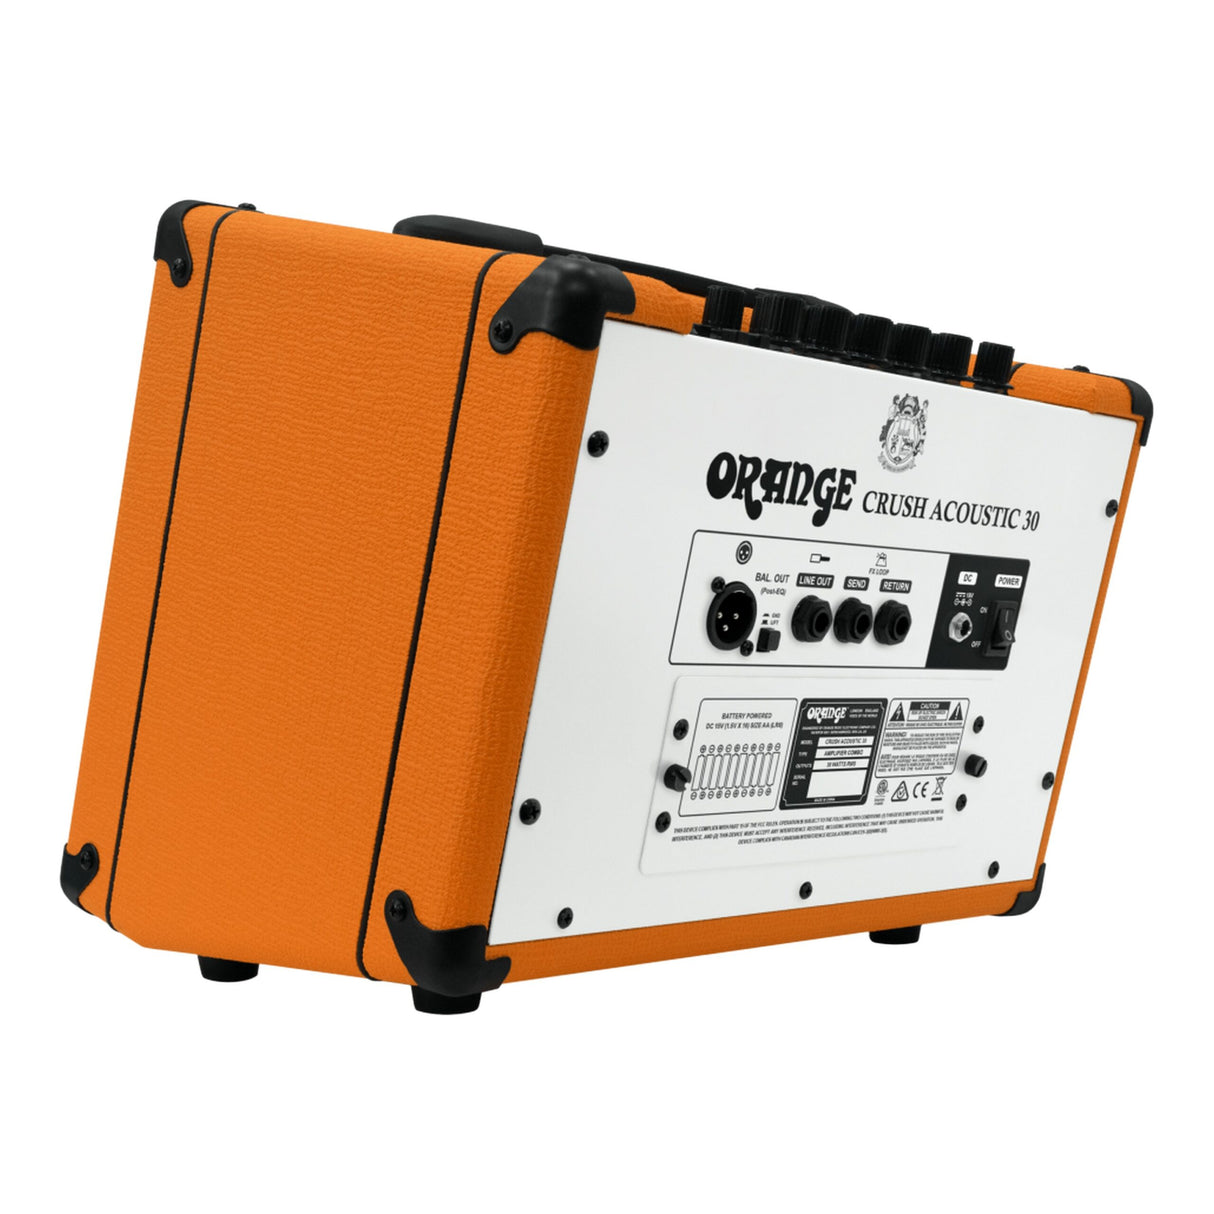 Orange CRUSH ACOUSTIC 30 30-Watt Twin Channel 1 x 8-Inch Combo Amplifier (Used)